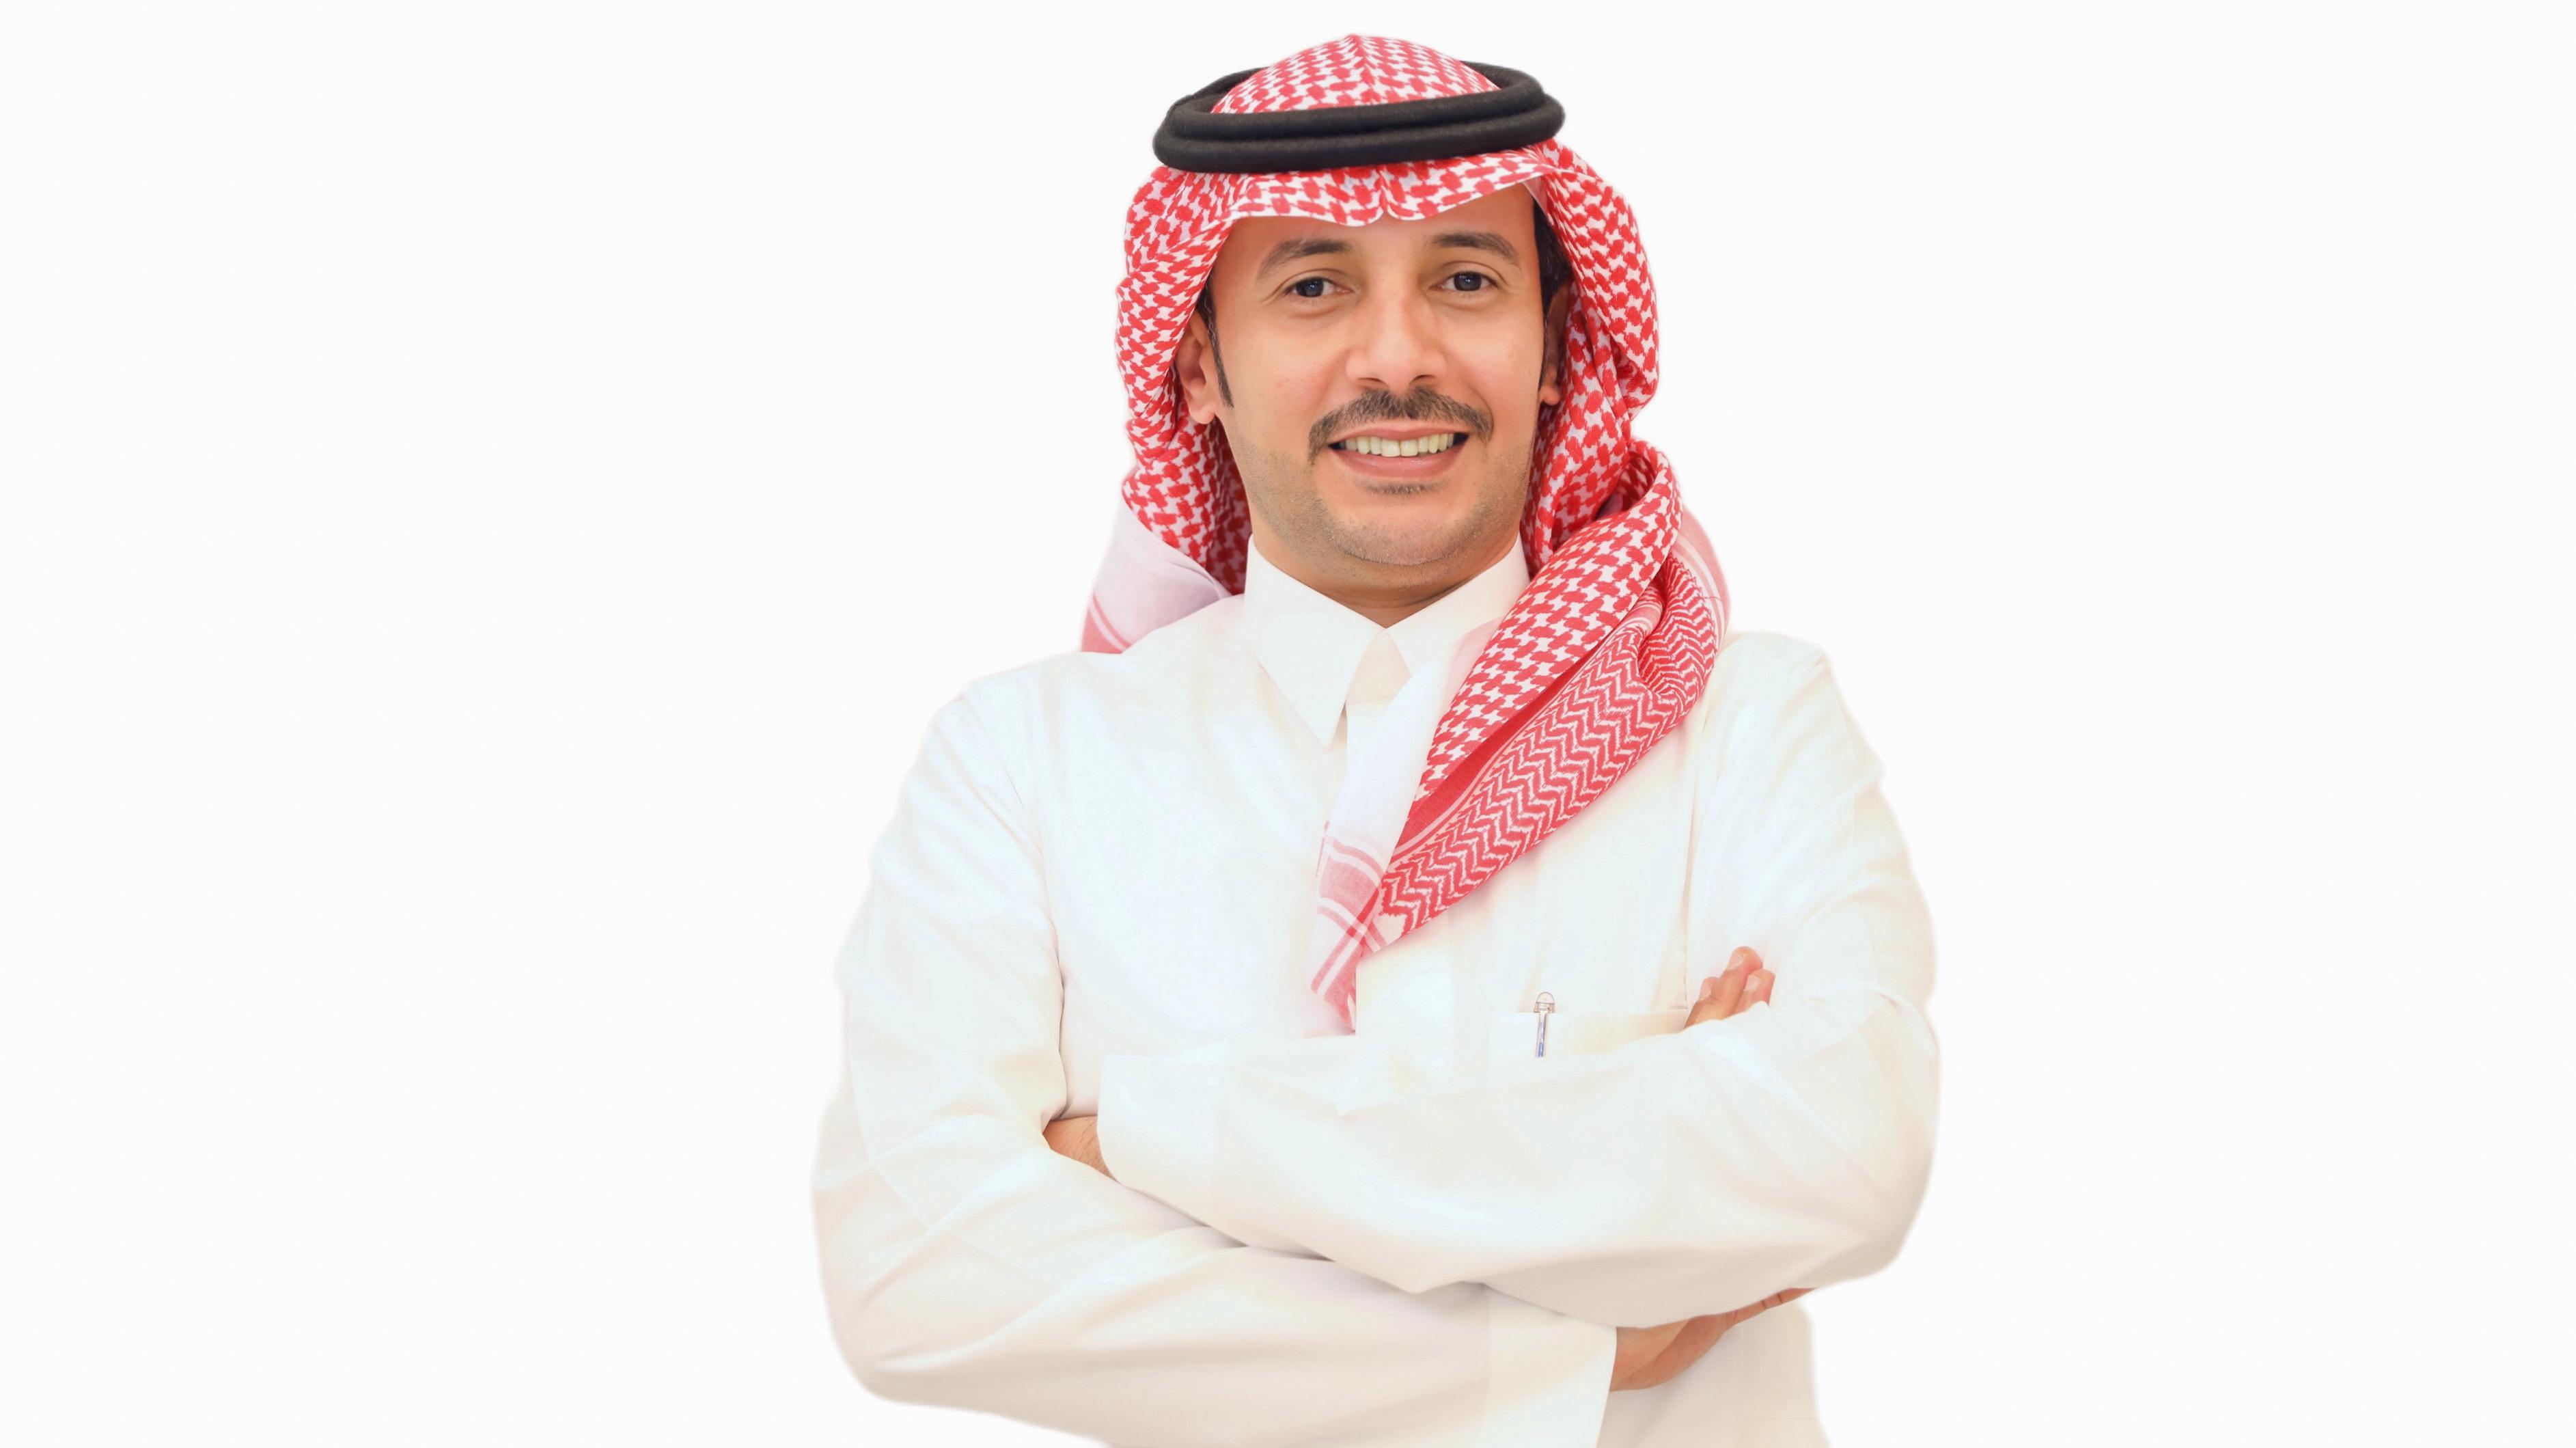 Mr. Faisal Yaeen Allah Al-Ghamdi